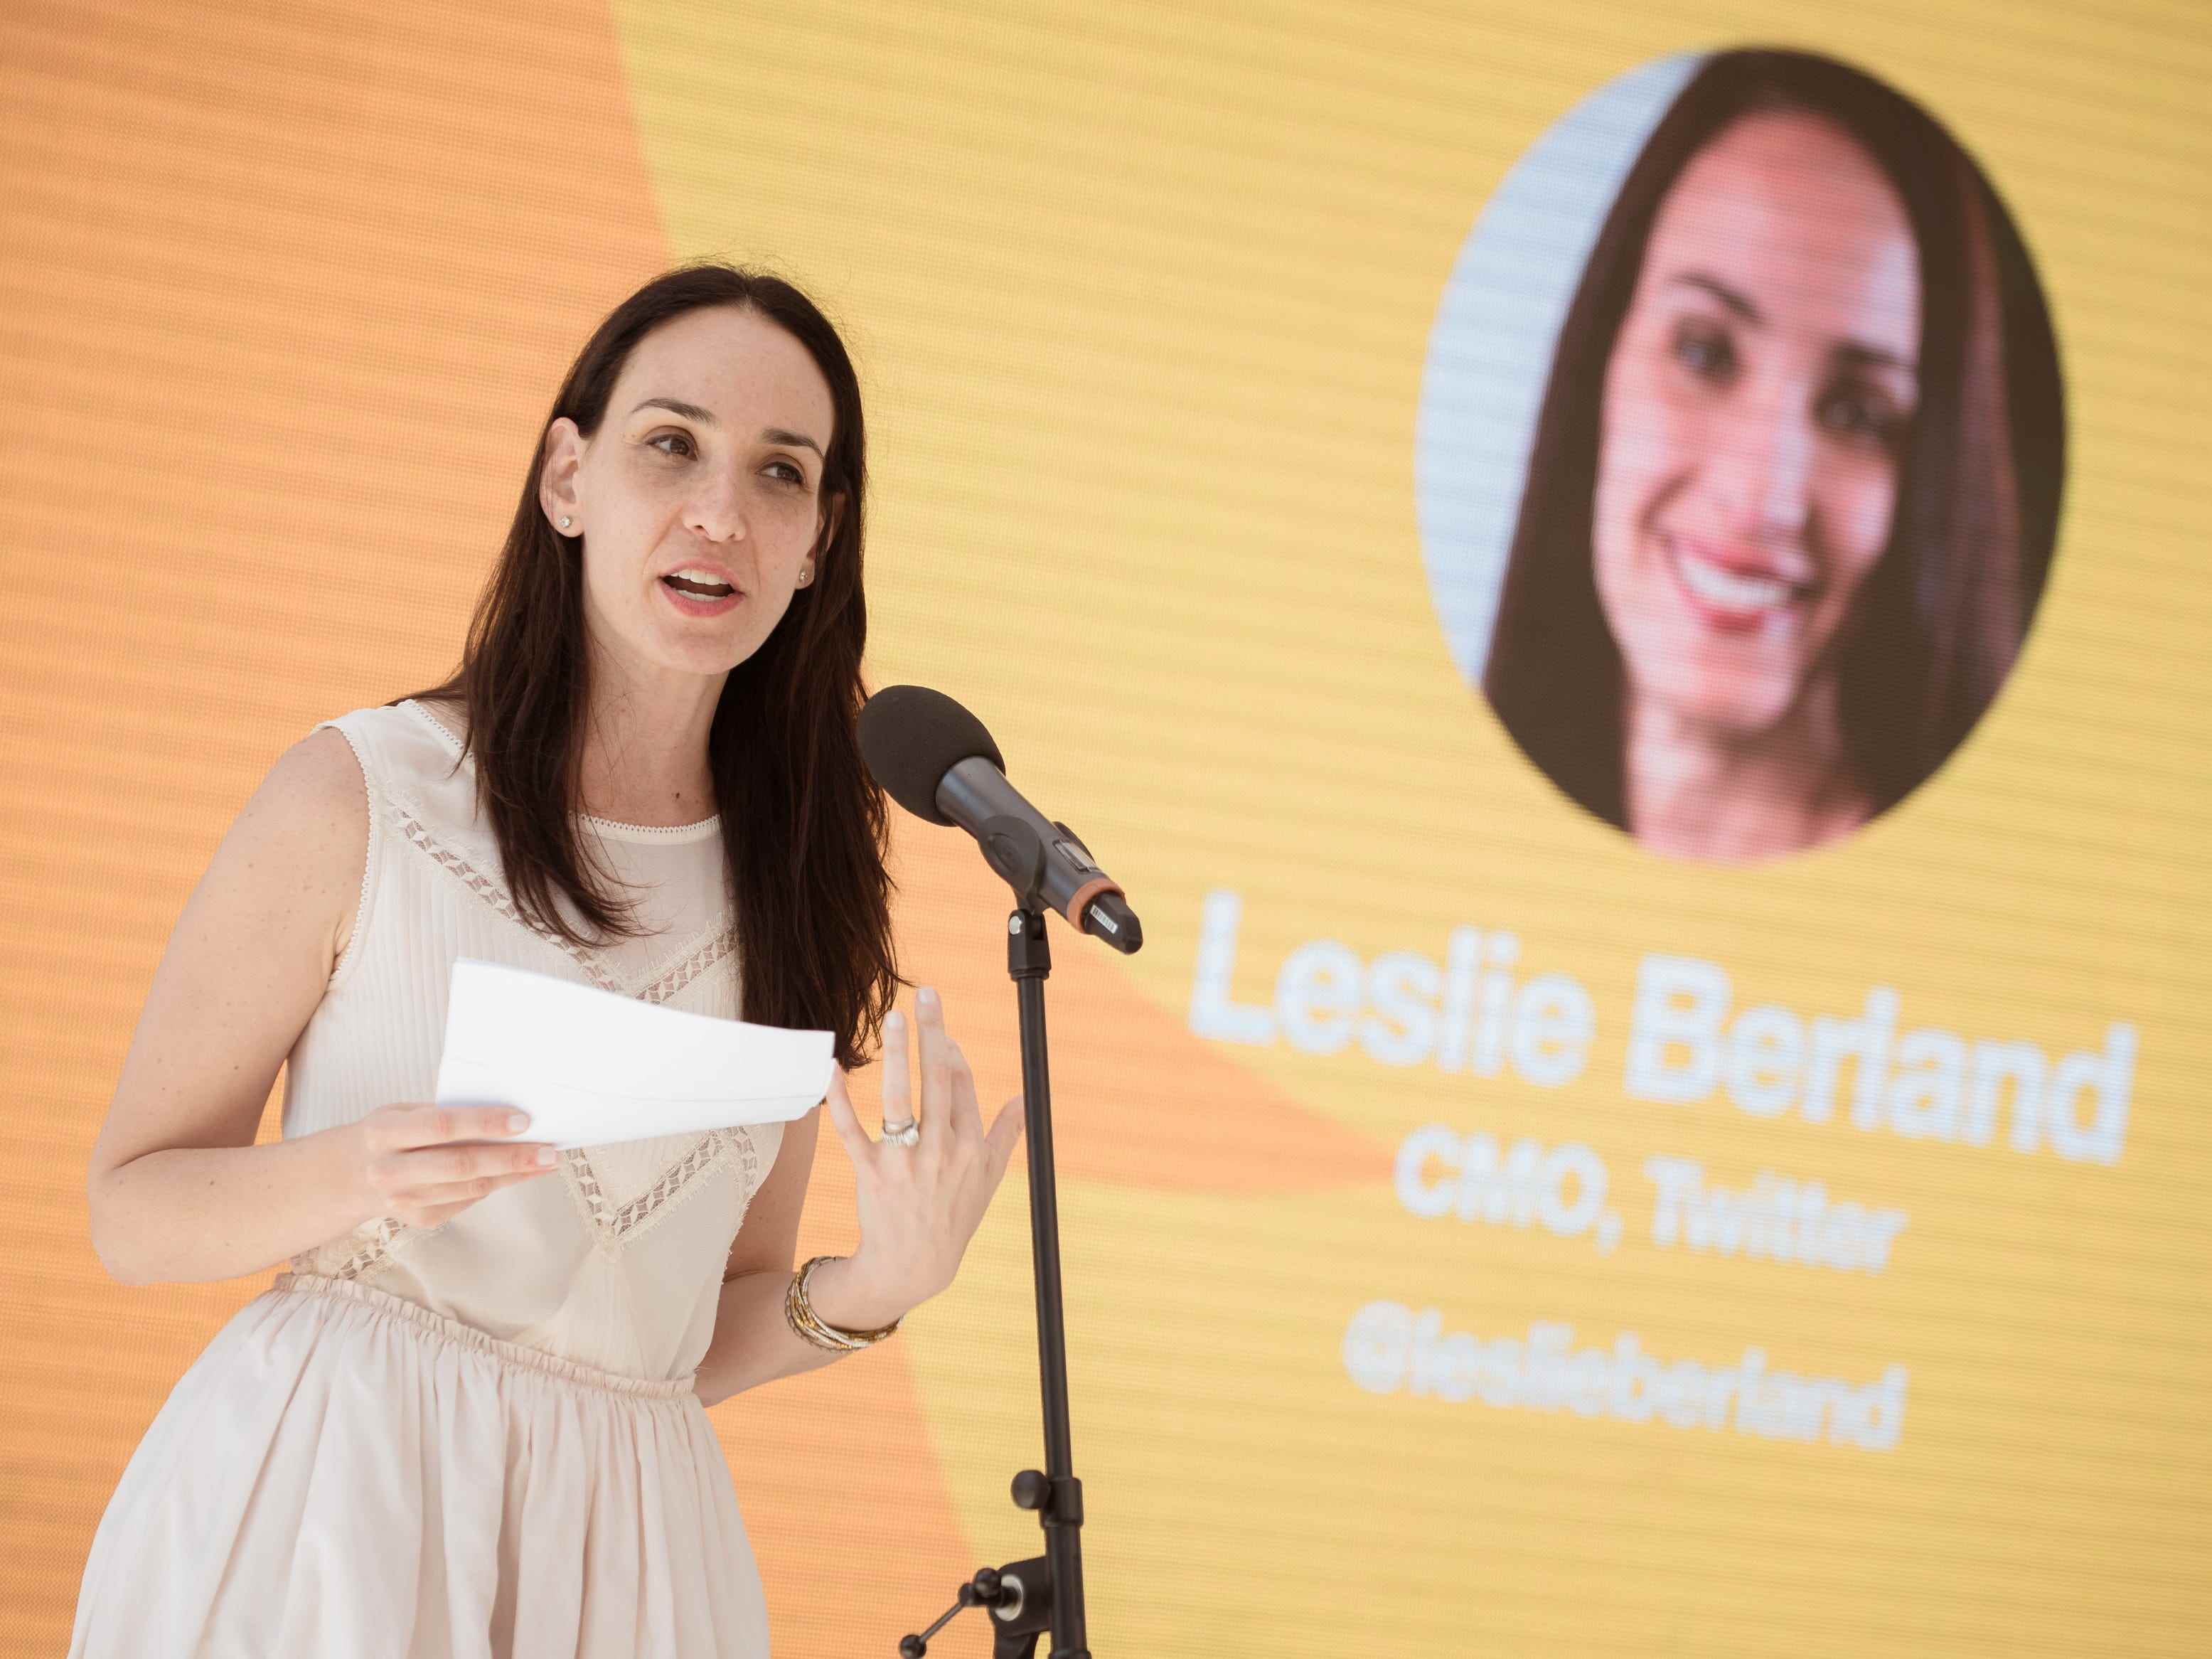 Leslie Berland, CMO von Twitter, nimmt am 21. Juni 2017 in Cannes, Frankreich, an der Veranstaltung „#SheInspiresMe: Twitter feiert weibliche Stimmen und Visionäre“ bei den Cannes Lions teil.